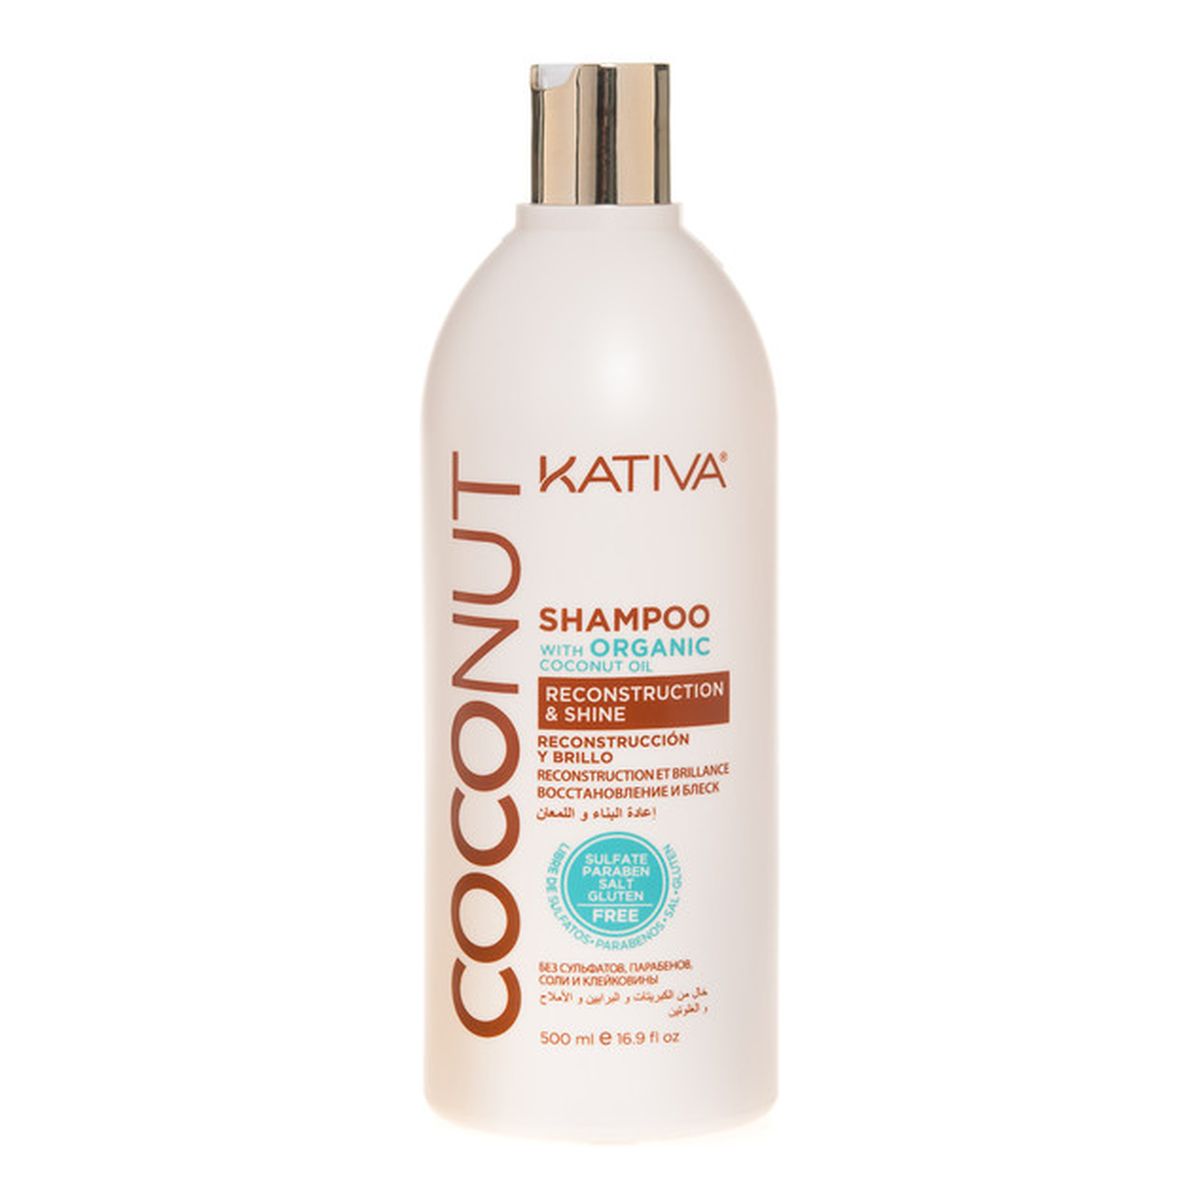 Kativa Coconut kokosowy szampon do włosów odbudowujący i nadający połysku 500ml